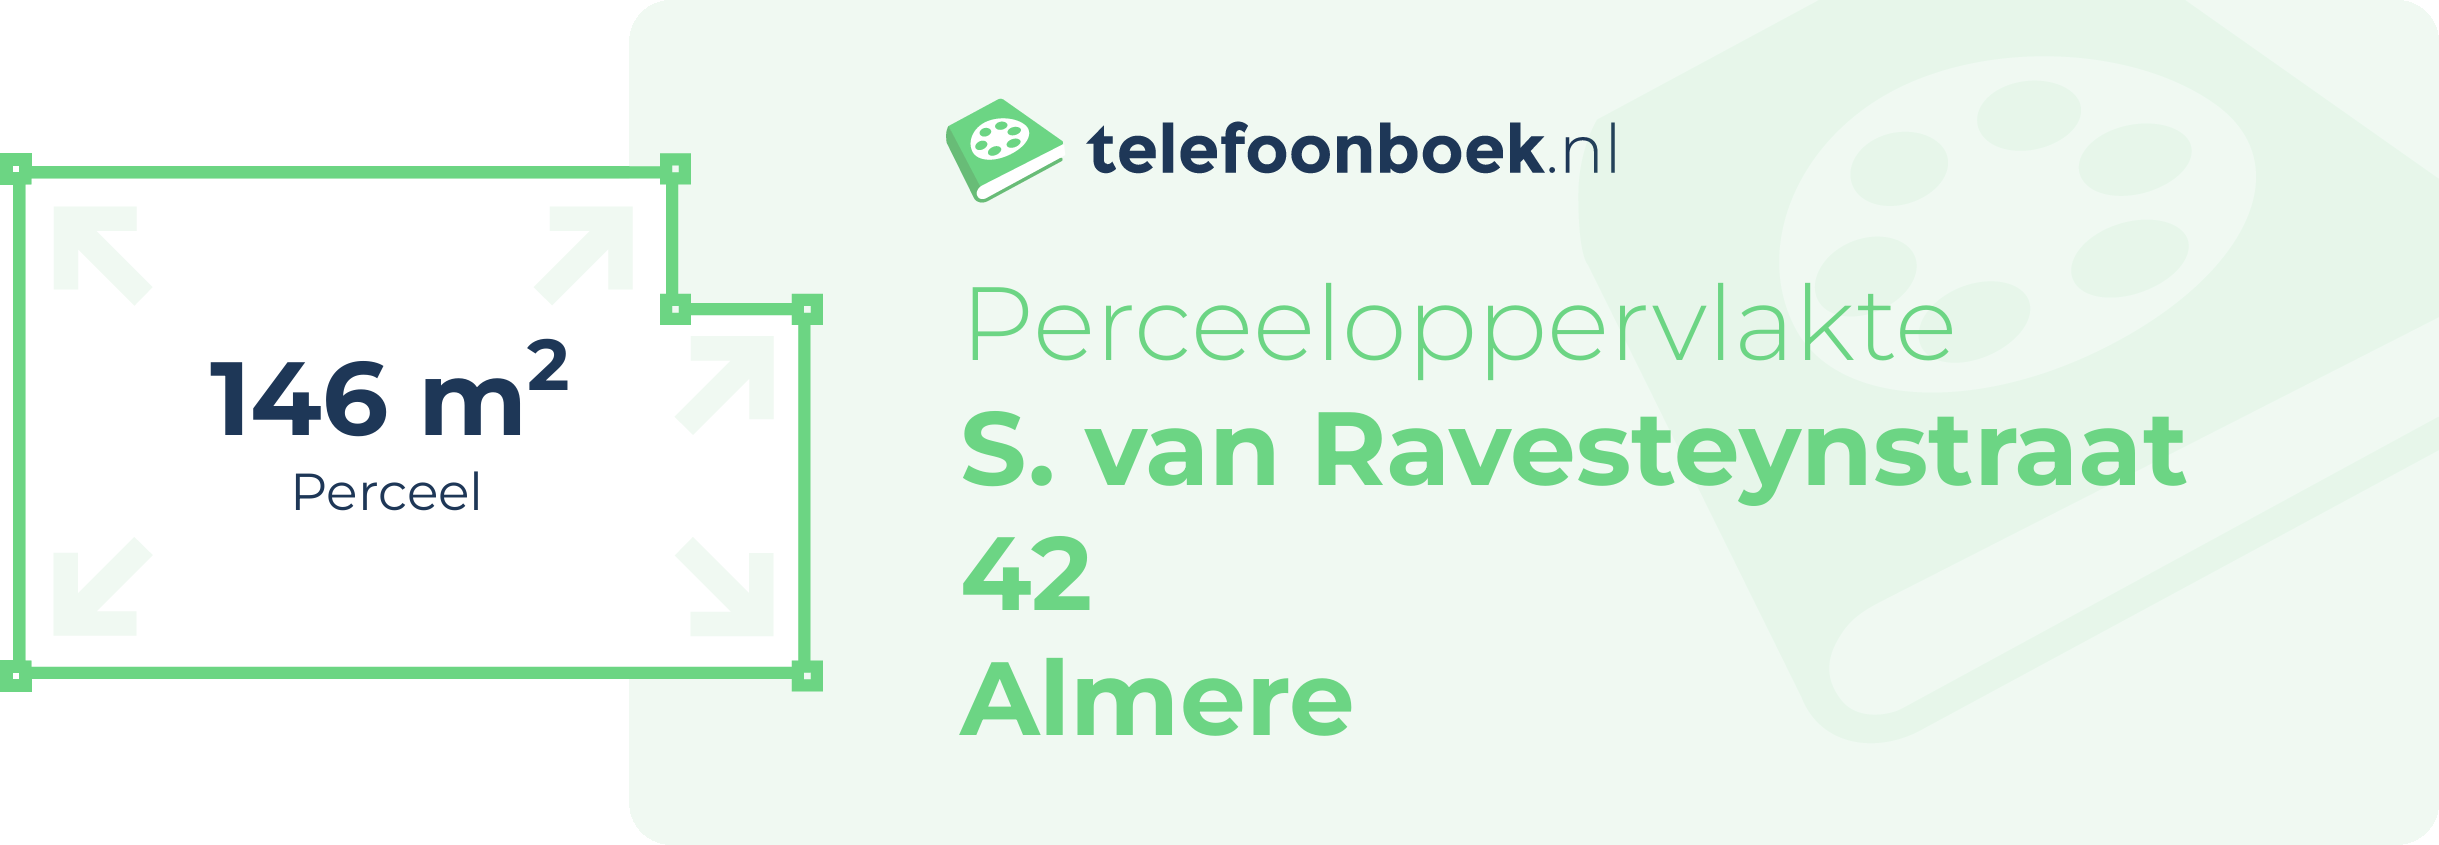 Perceeloppervlakte S. Van Ravesteynstraat 42 Almere